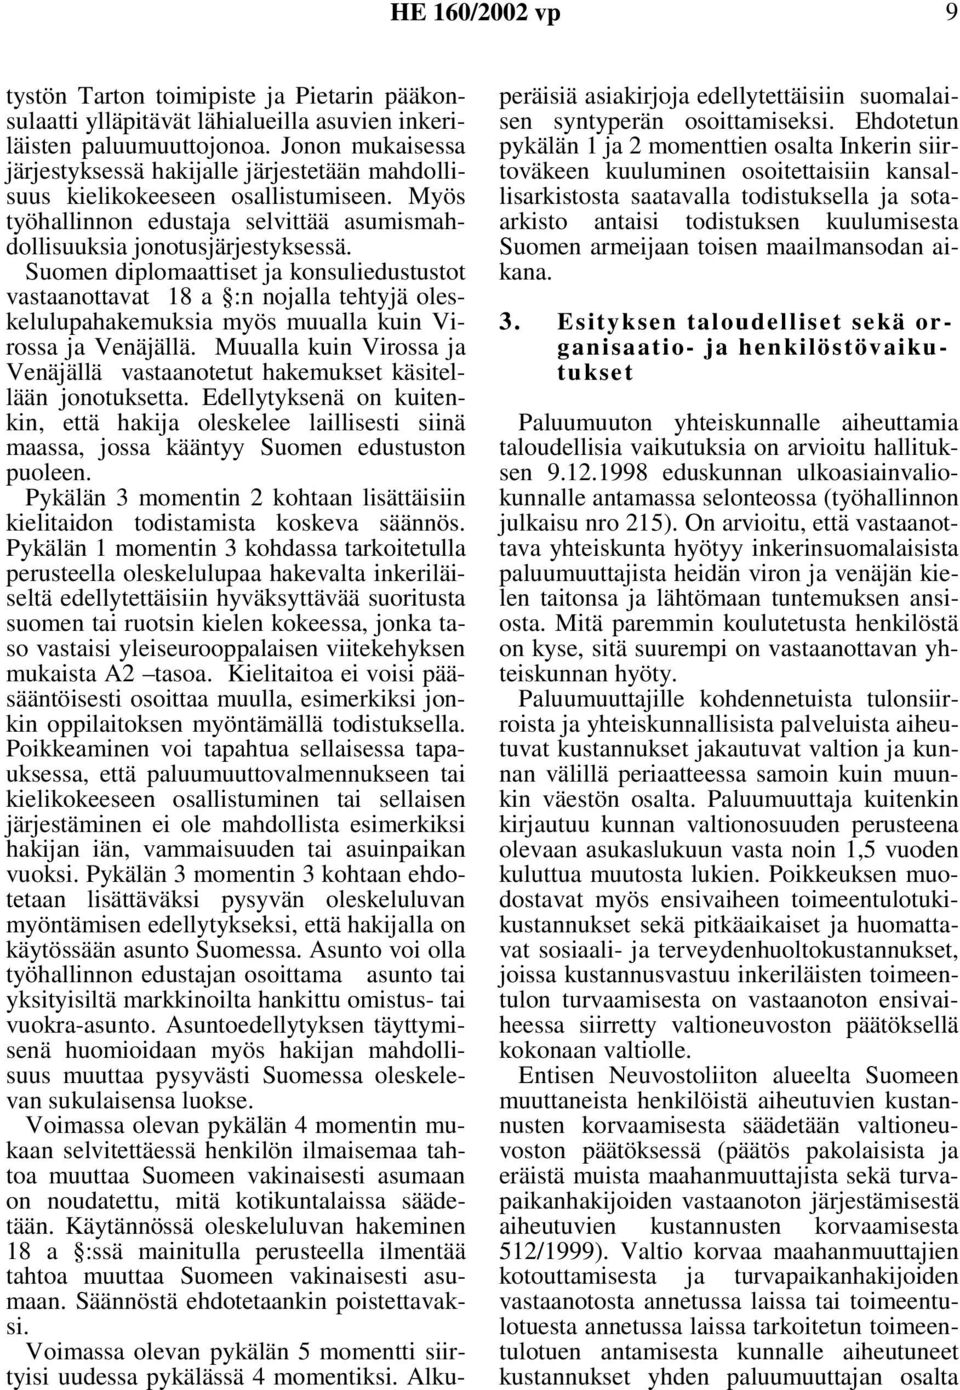 Suomen diplomaattiset ja konsuliedustustot vastaanottavat 18 a :n nojalla tehtyjä oleskelulupahakemuksia myös muualla kuin Virossa ja Venäjällä.